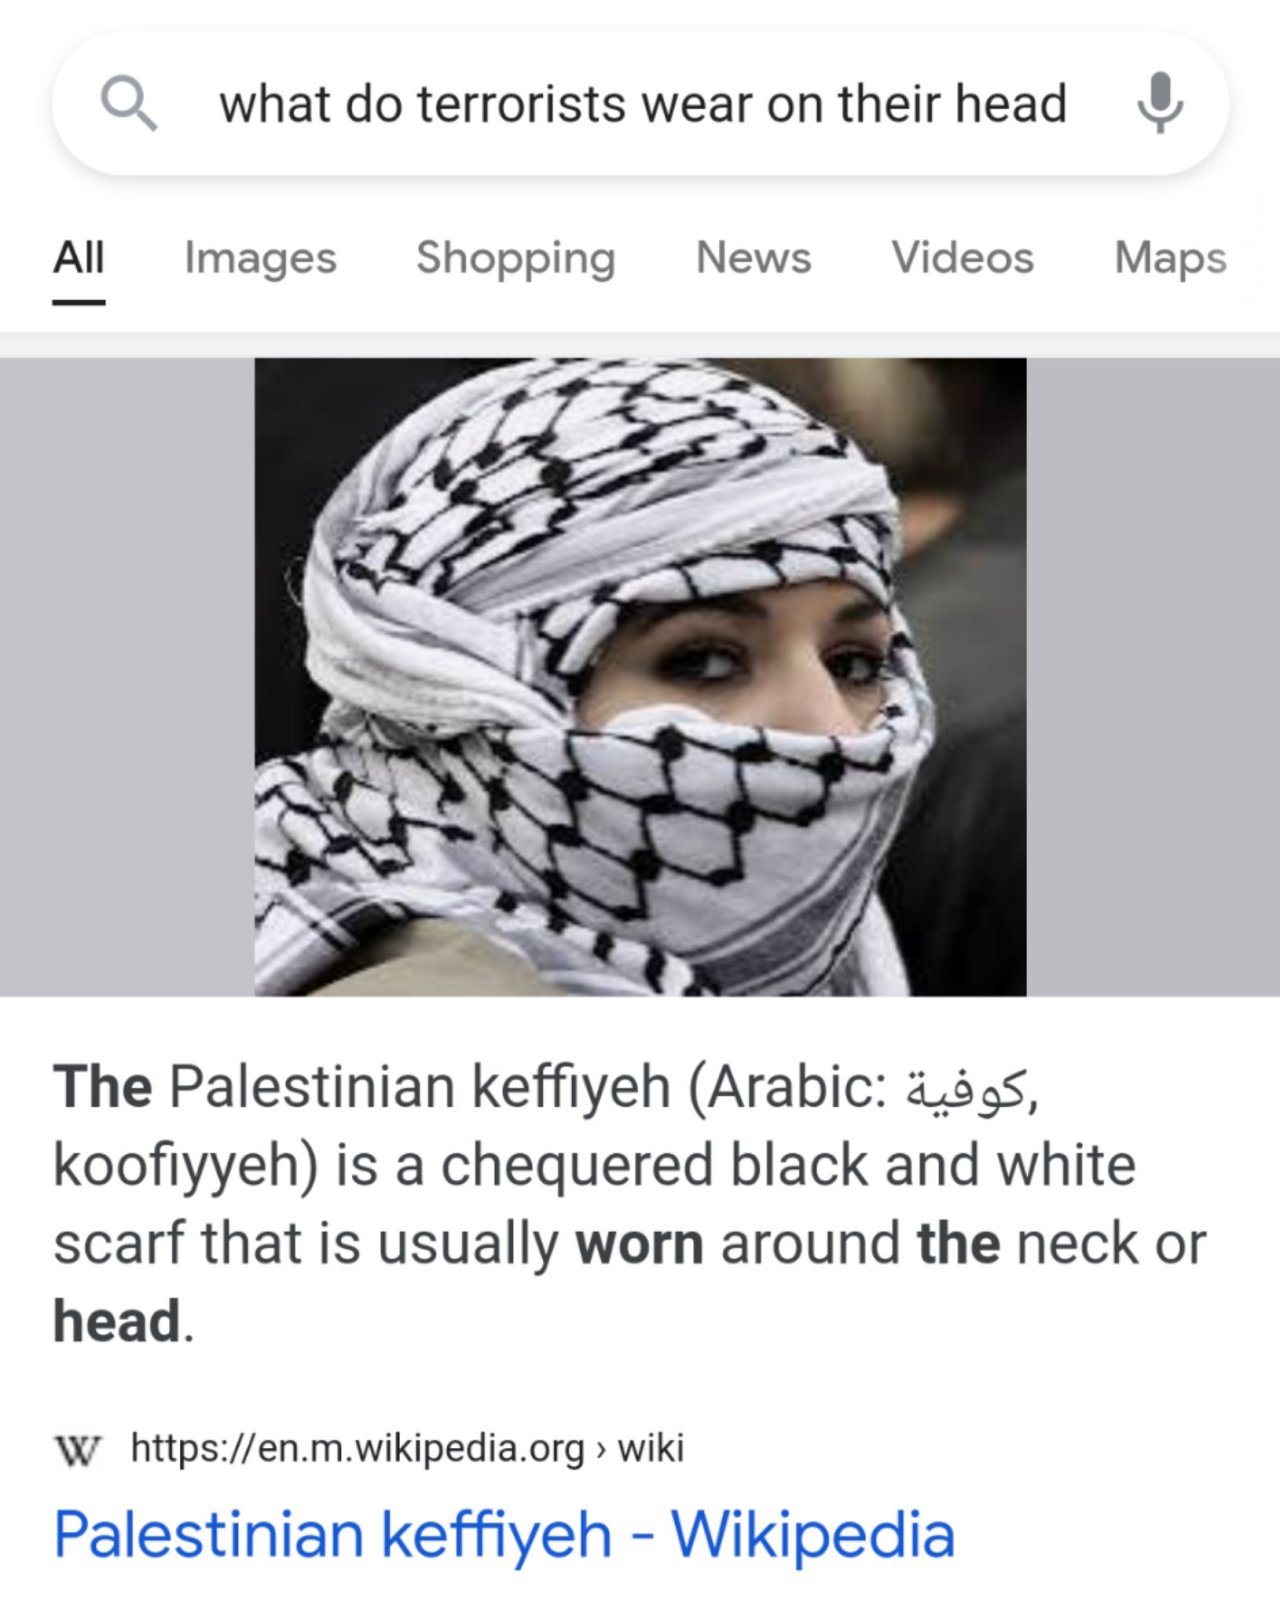 Palestinian keffiyeh - Wikipedia